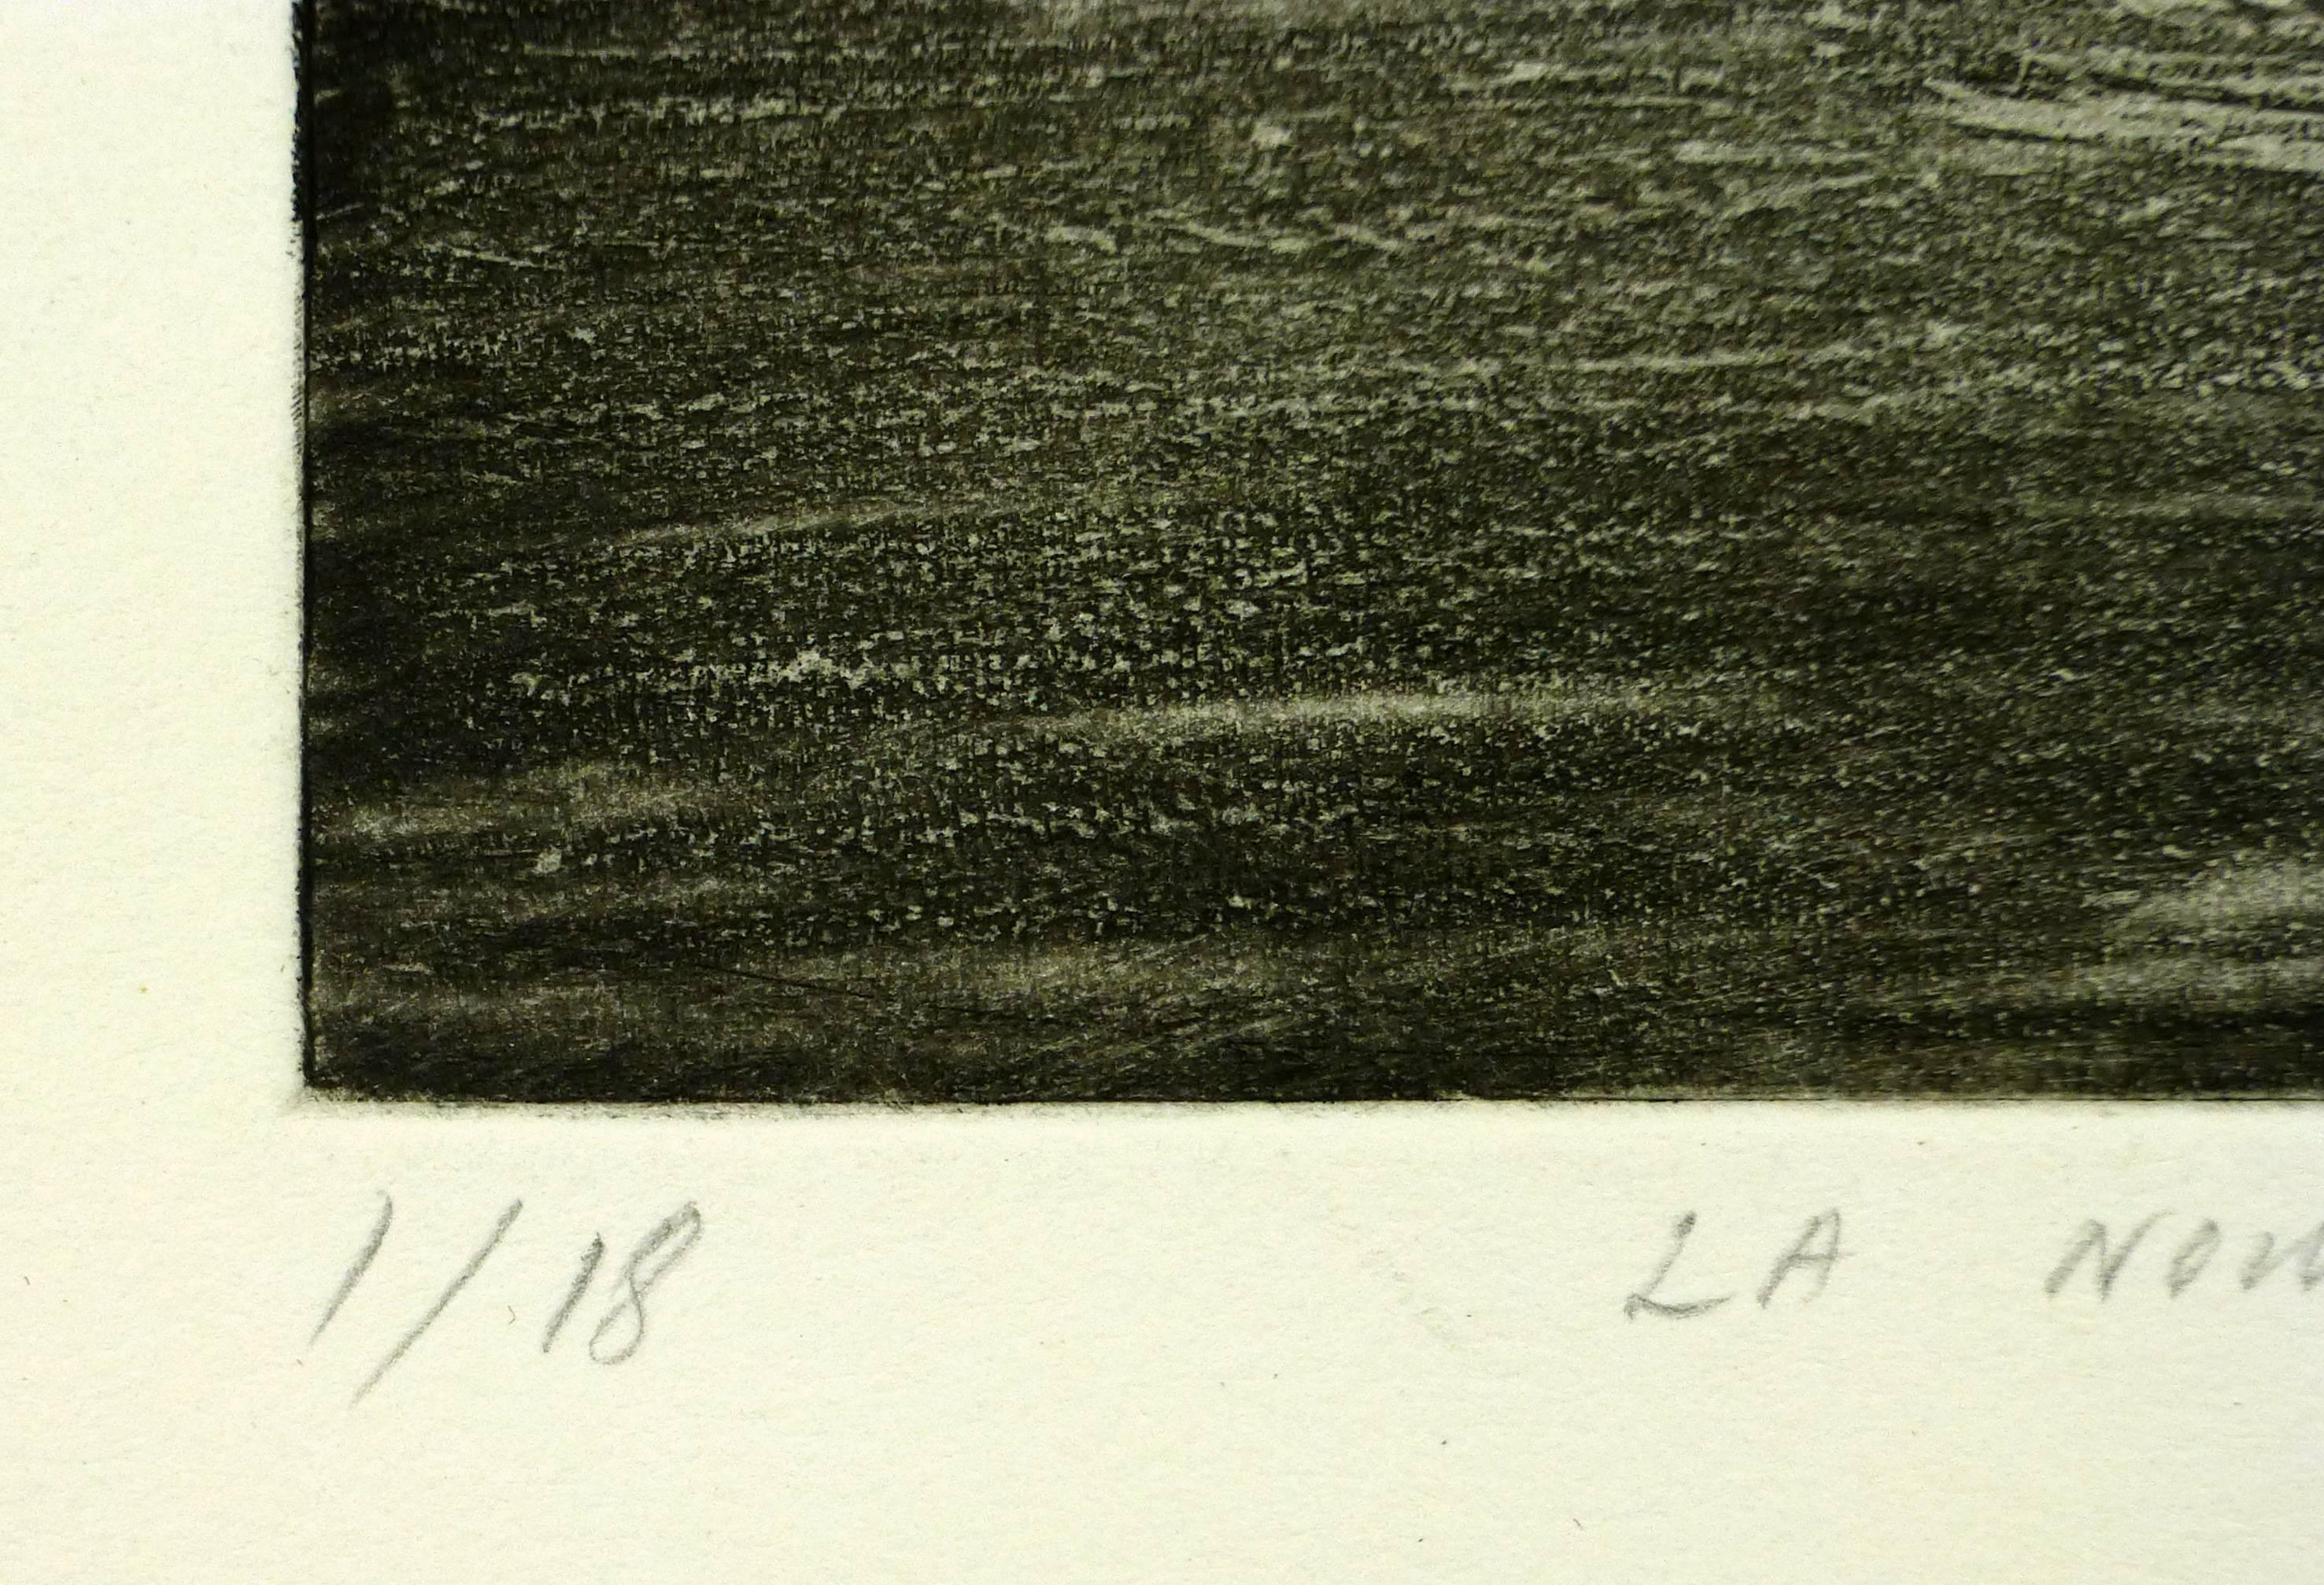 Französische abstrakte Aquatintaradierung einer gewandeten Figur und eines Flugzeugs, 1978. Signiert unten rechts.

Originalkunstwerk auf Papier auf einem weißen Passepartout mit Goldrand. Inklusive Plastikhülle und Echtheitszertifikat für die